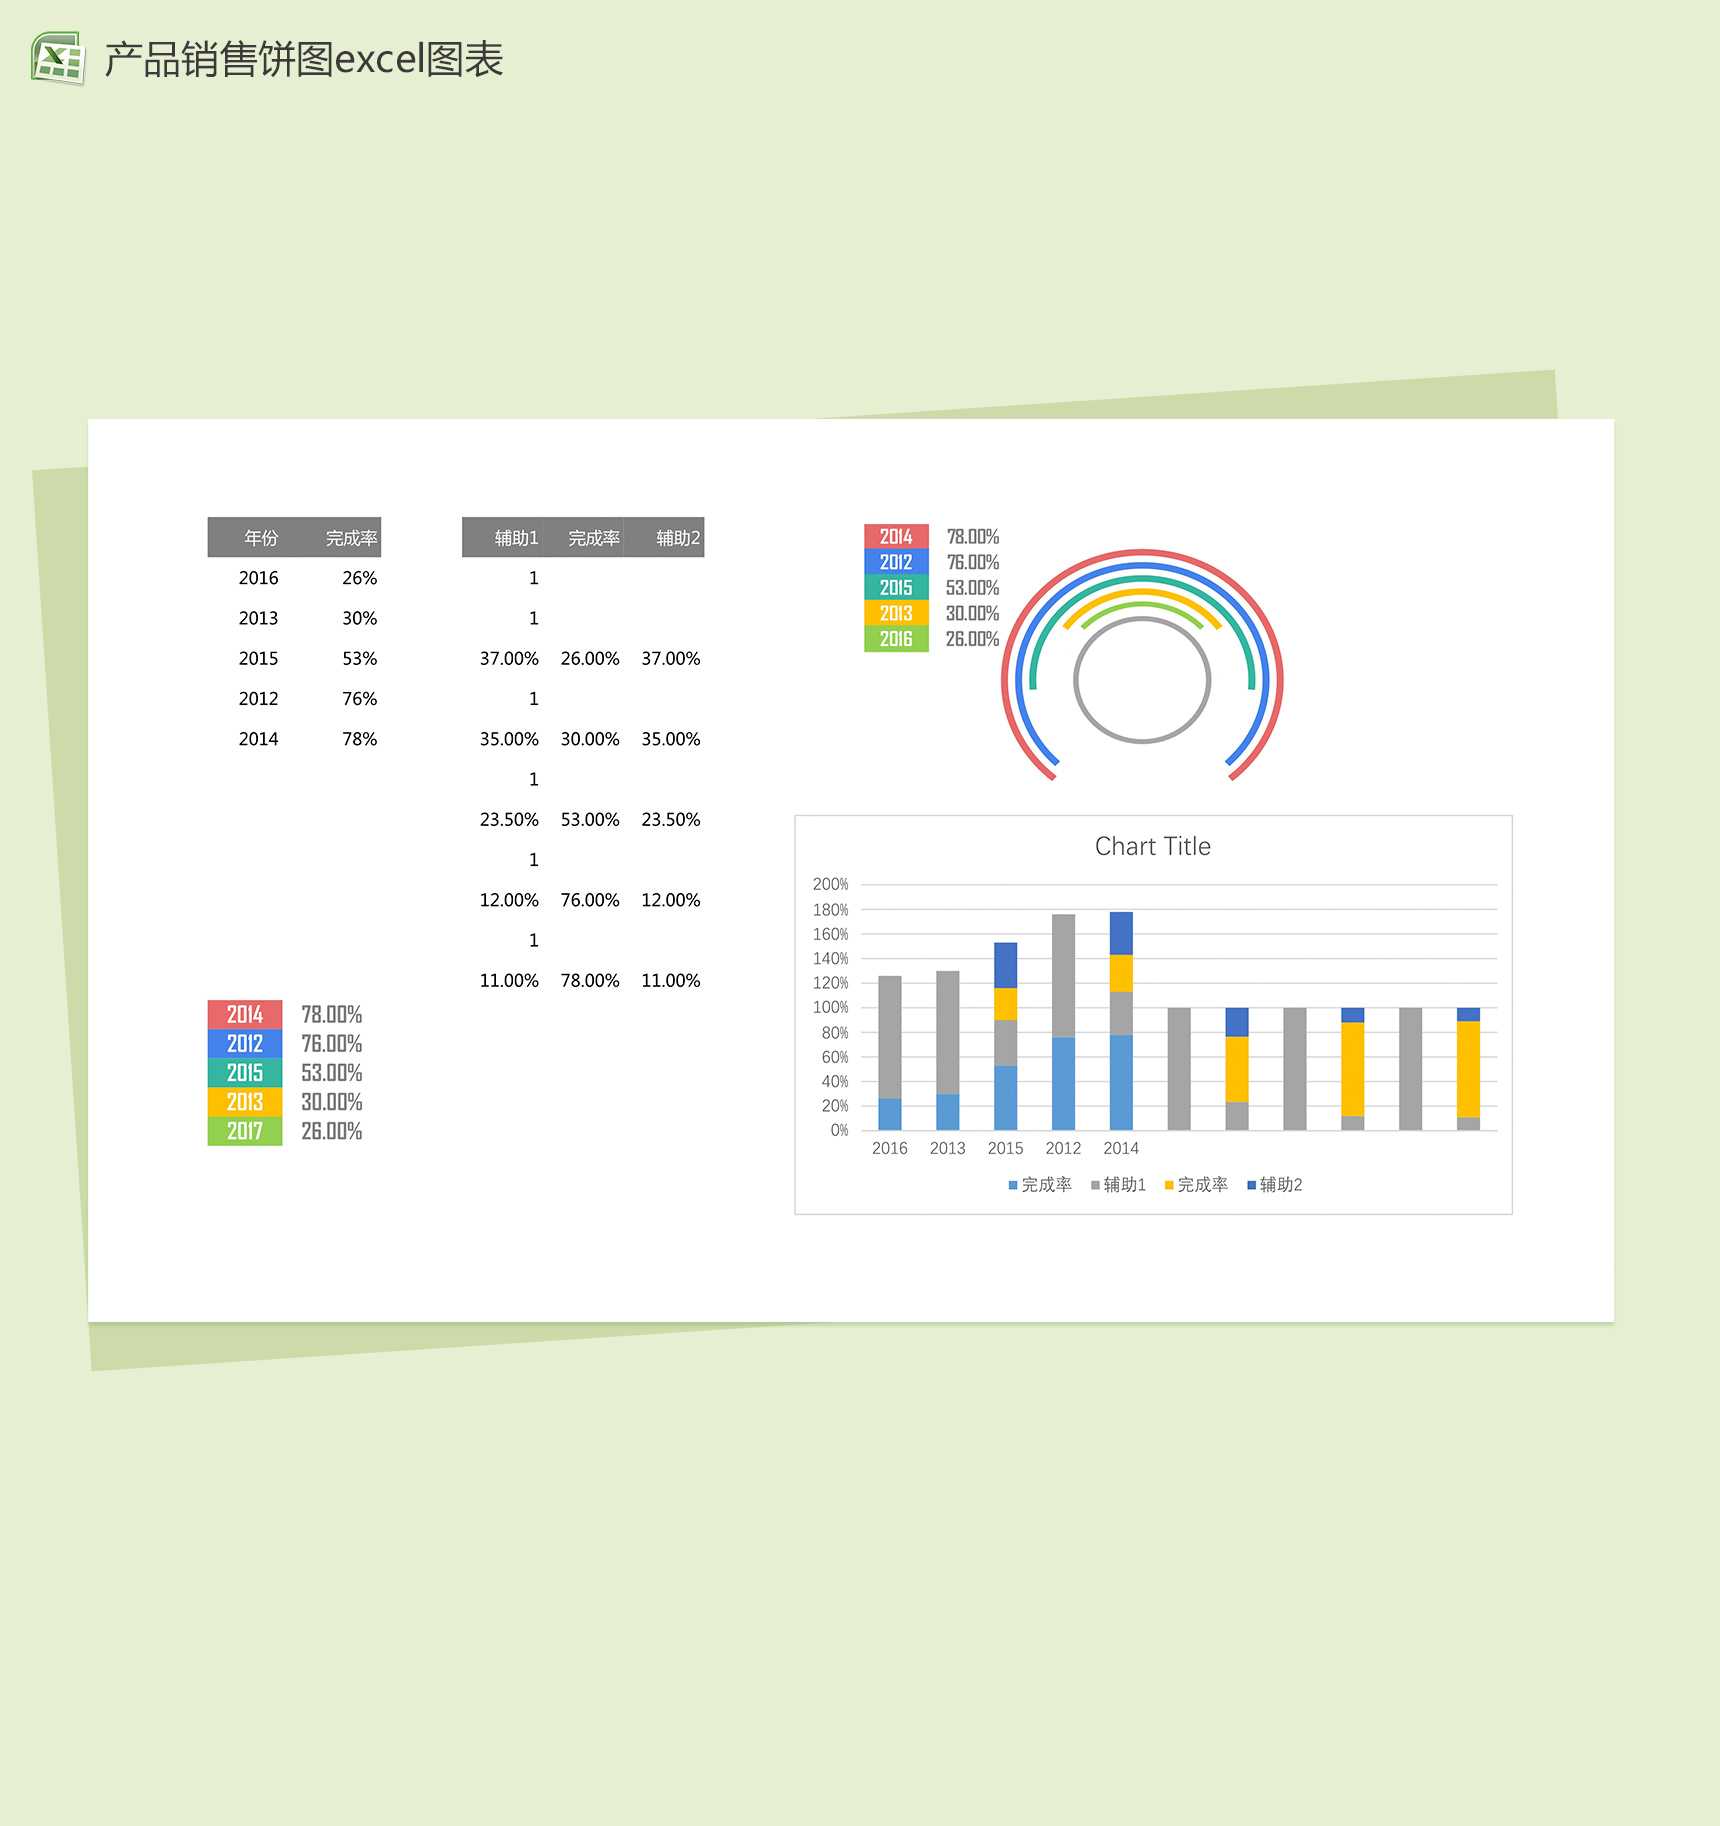 公司销售部门产品销量统计分析excel图表模板-1